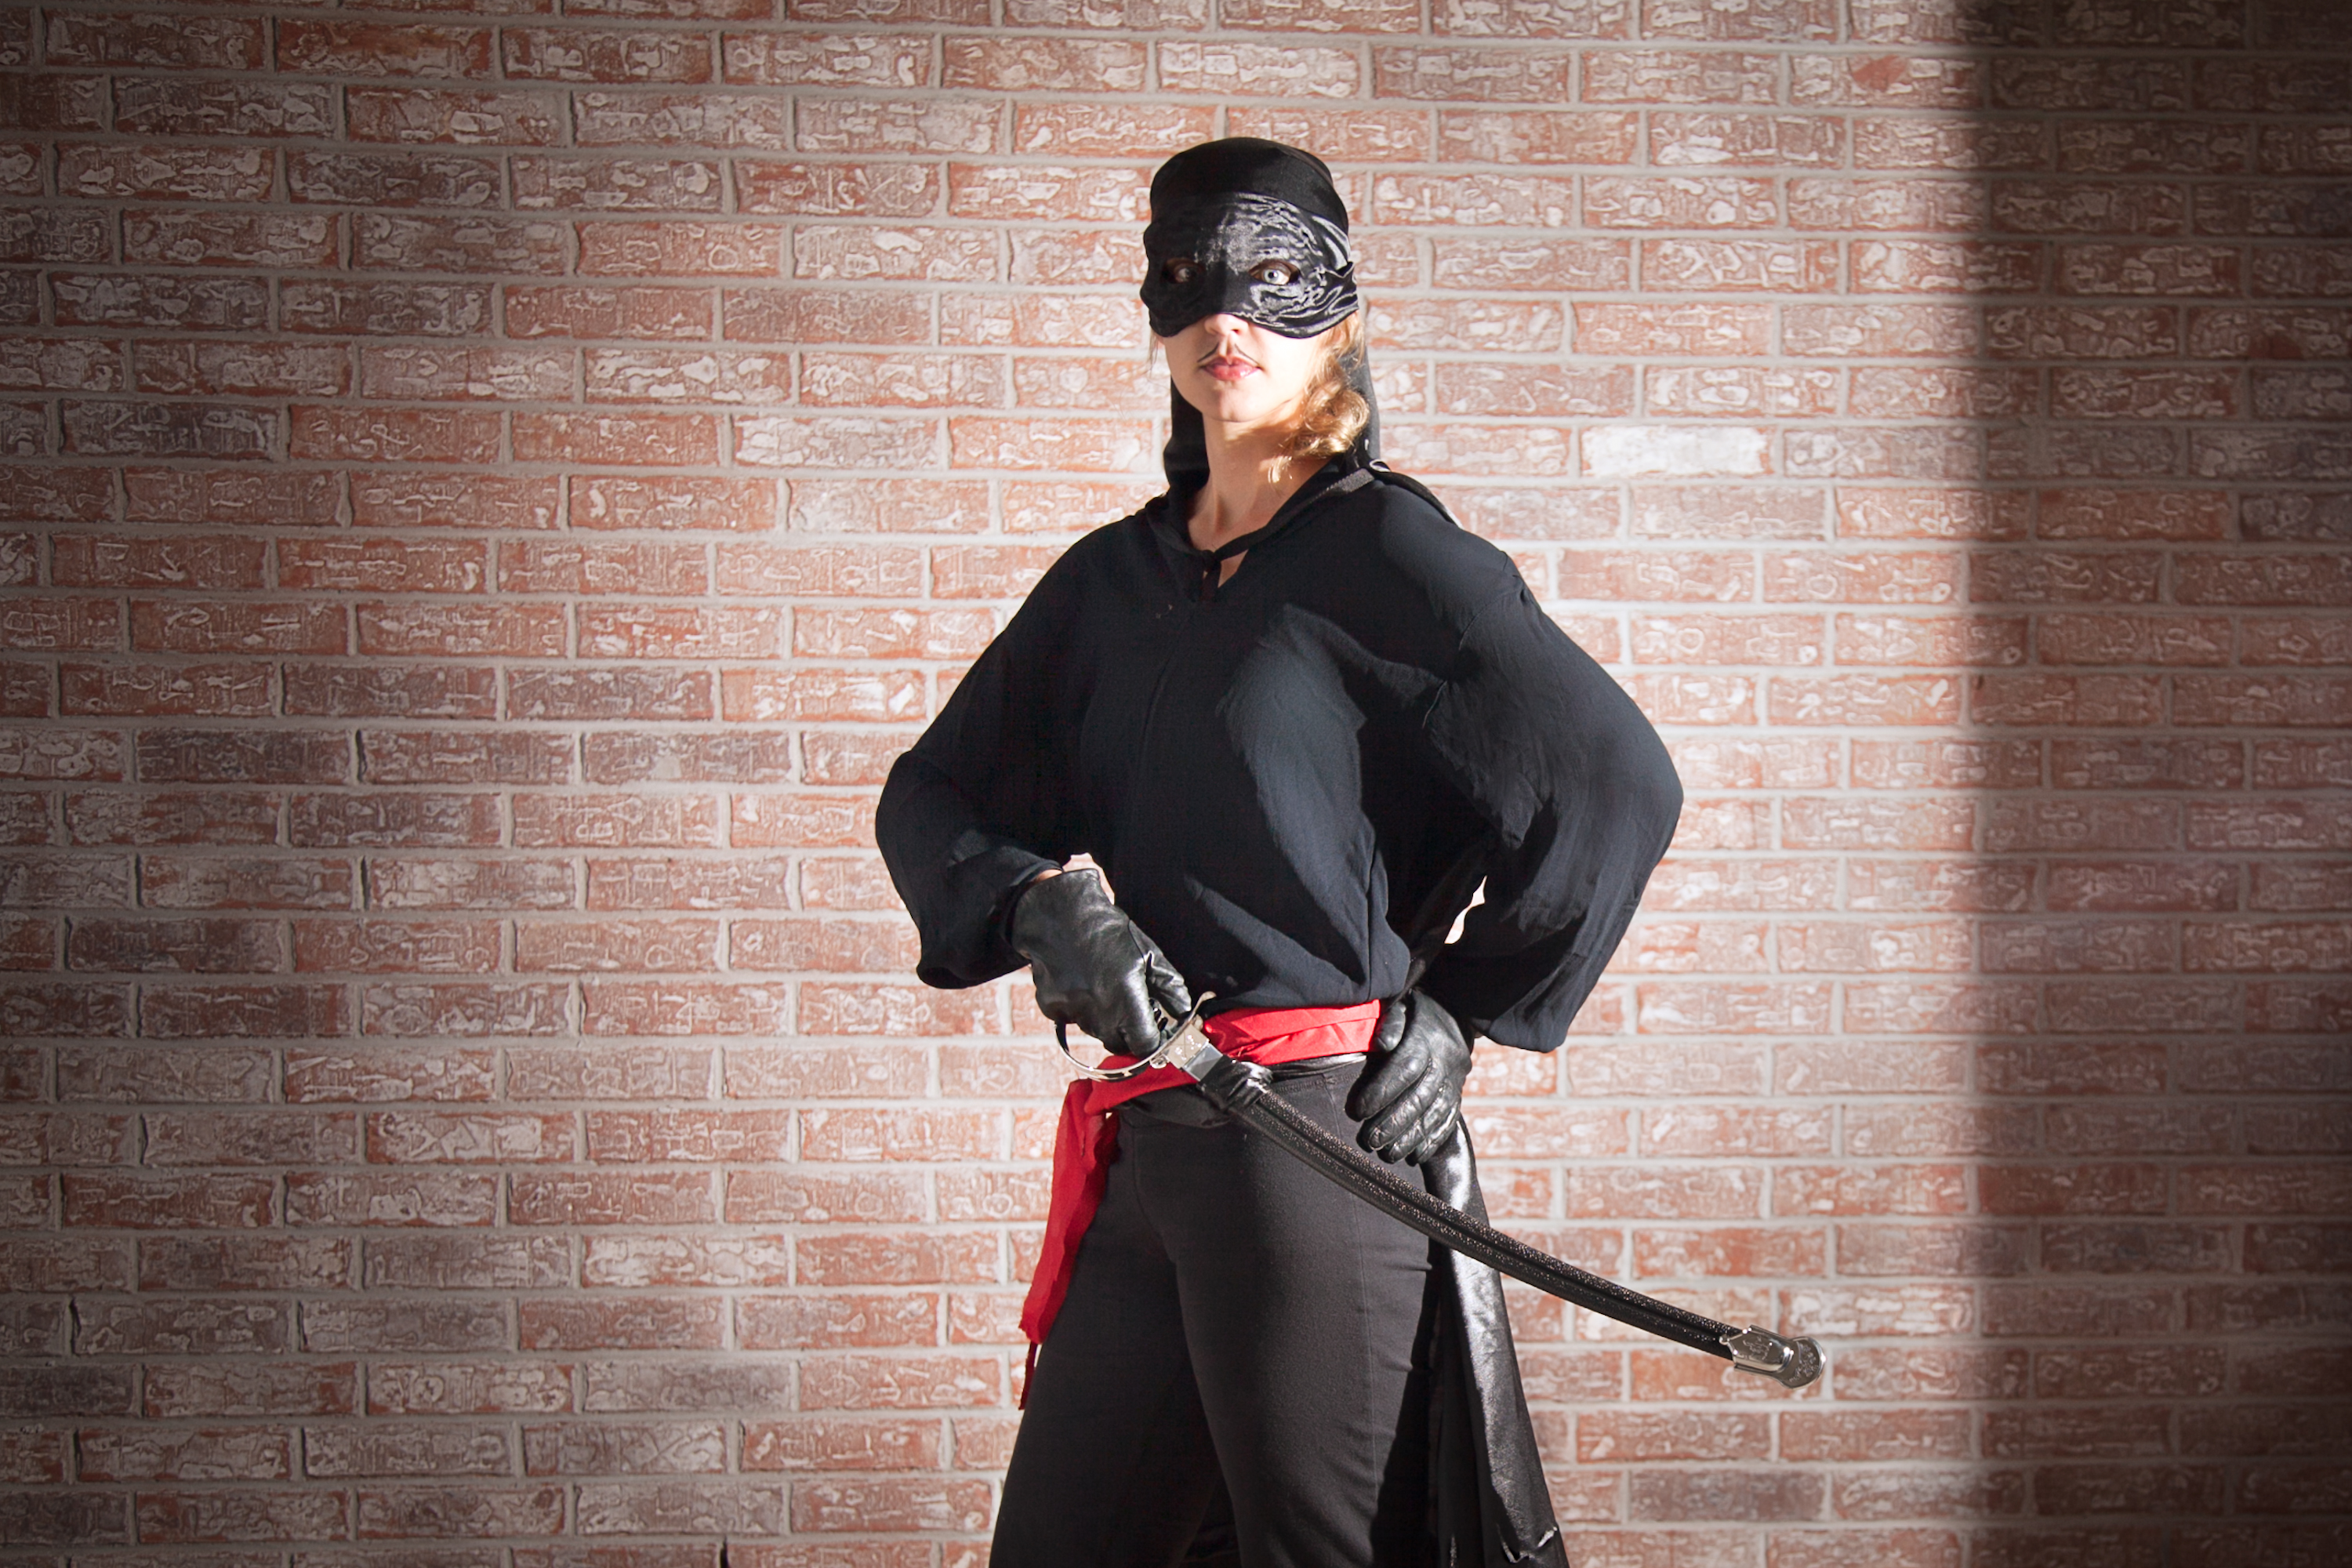 How to Make a Zorro Costume